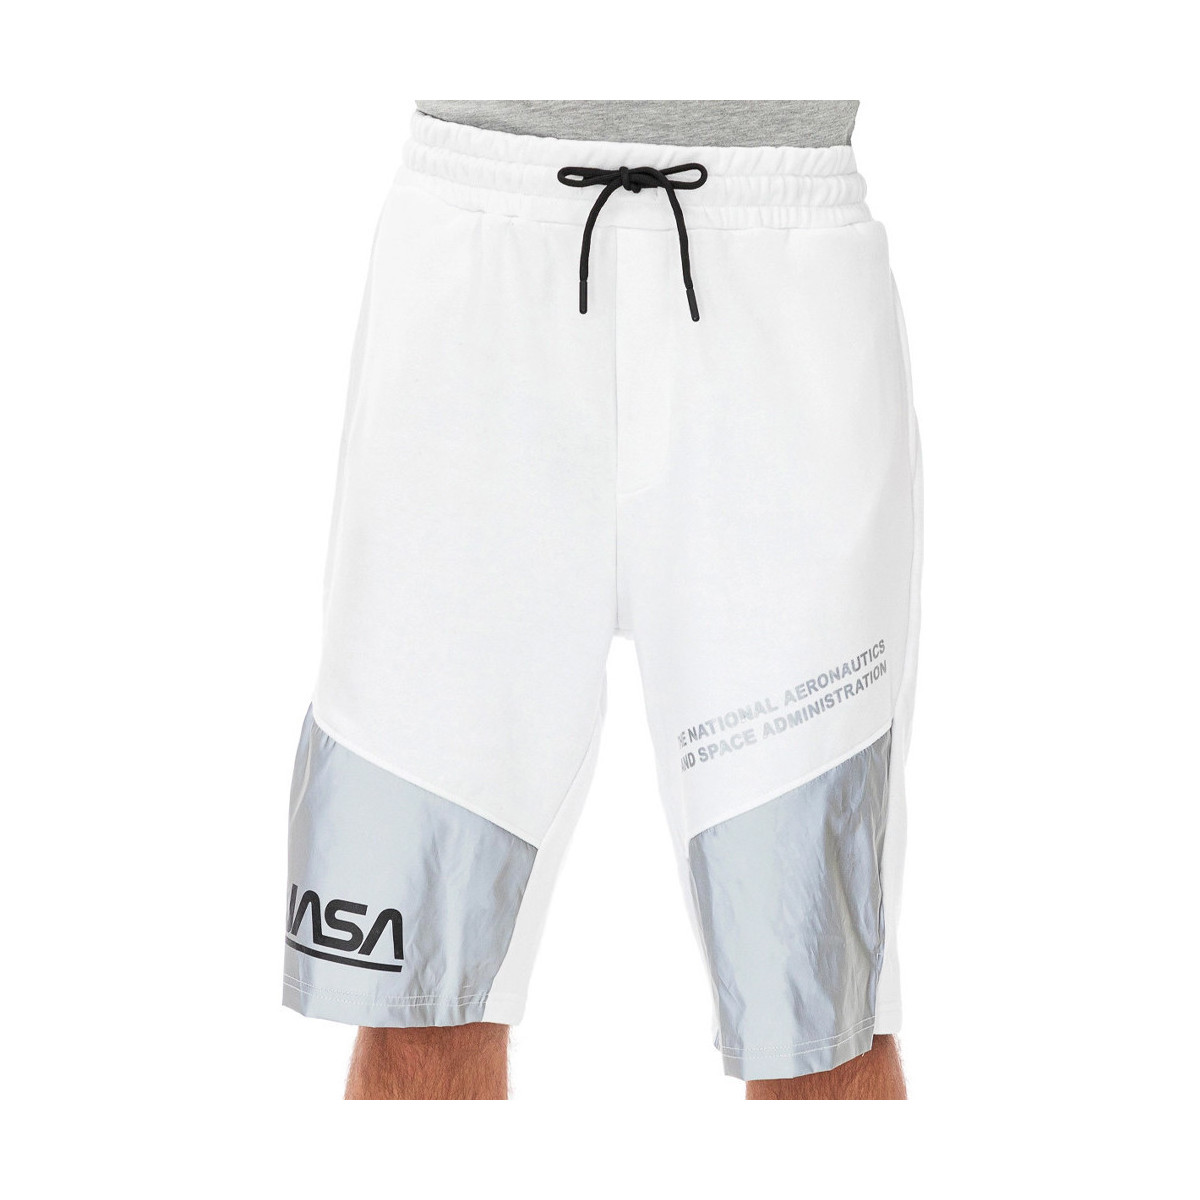 Abbigliamento Uomo Shorts / Bermuda Nasa -NASA25S Bianco